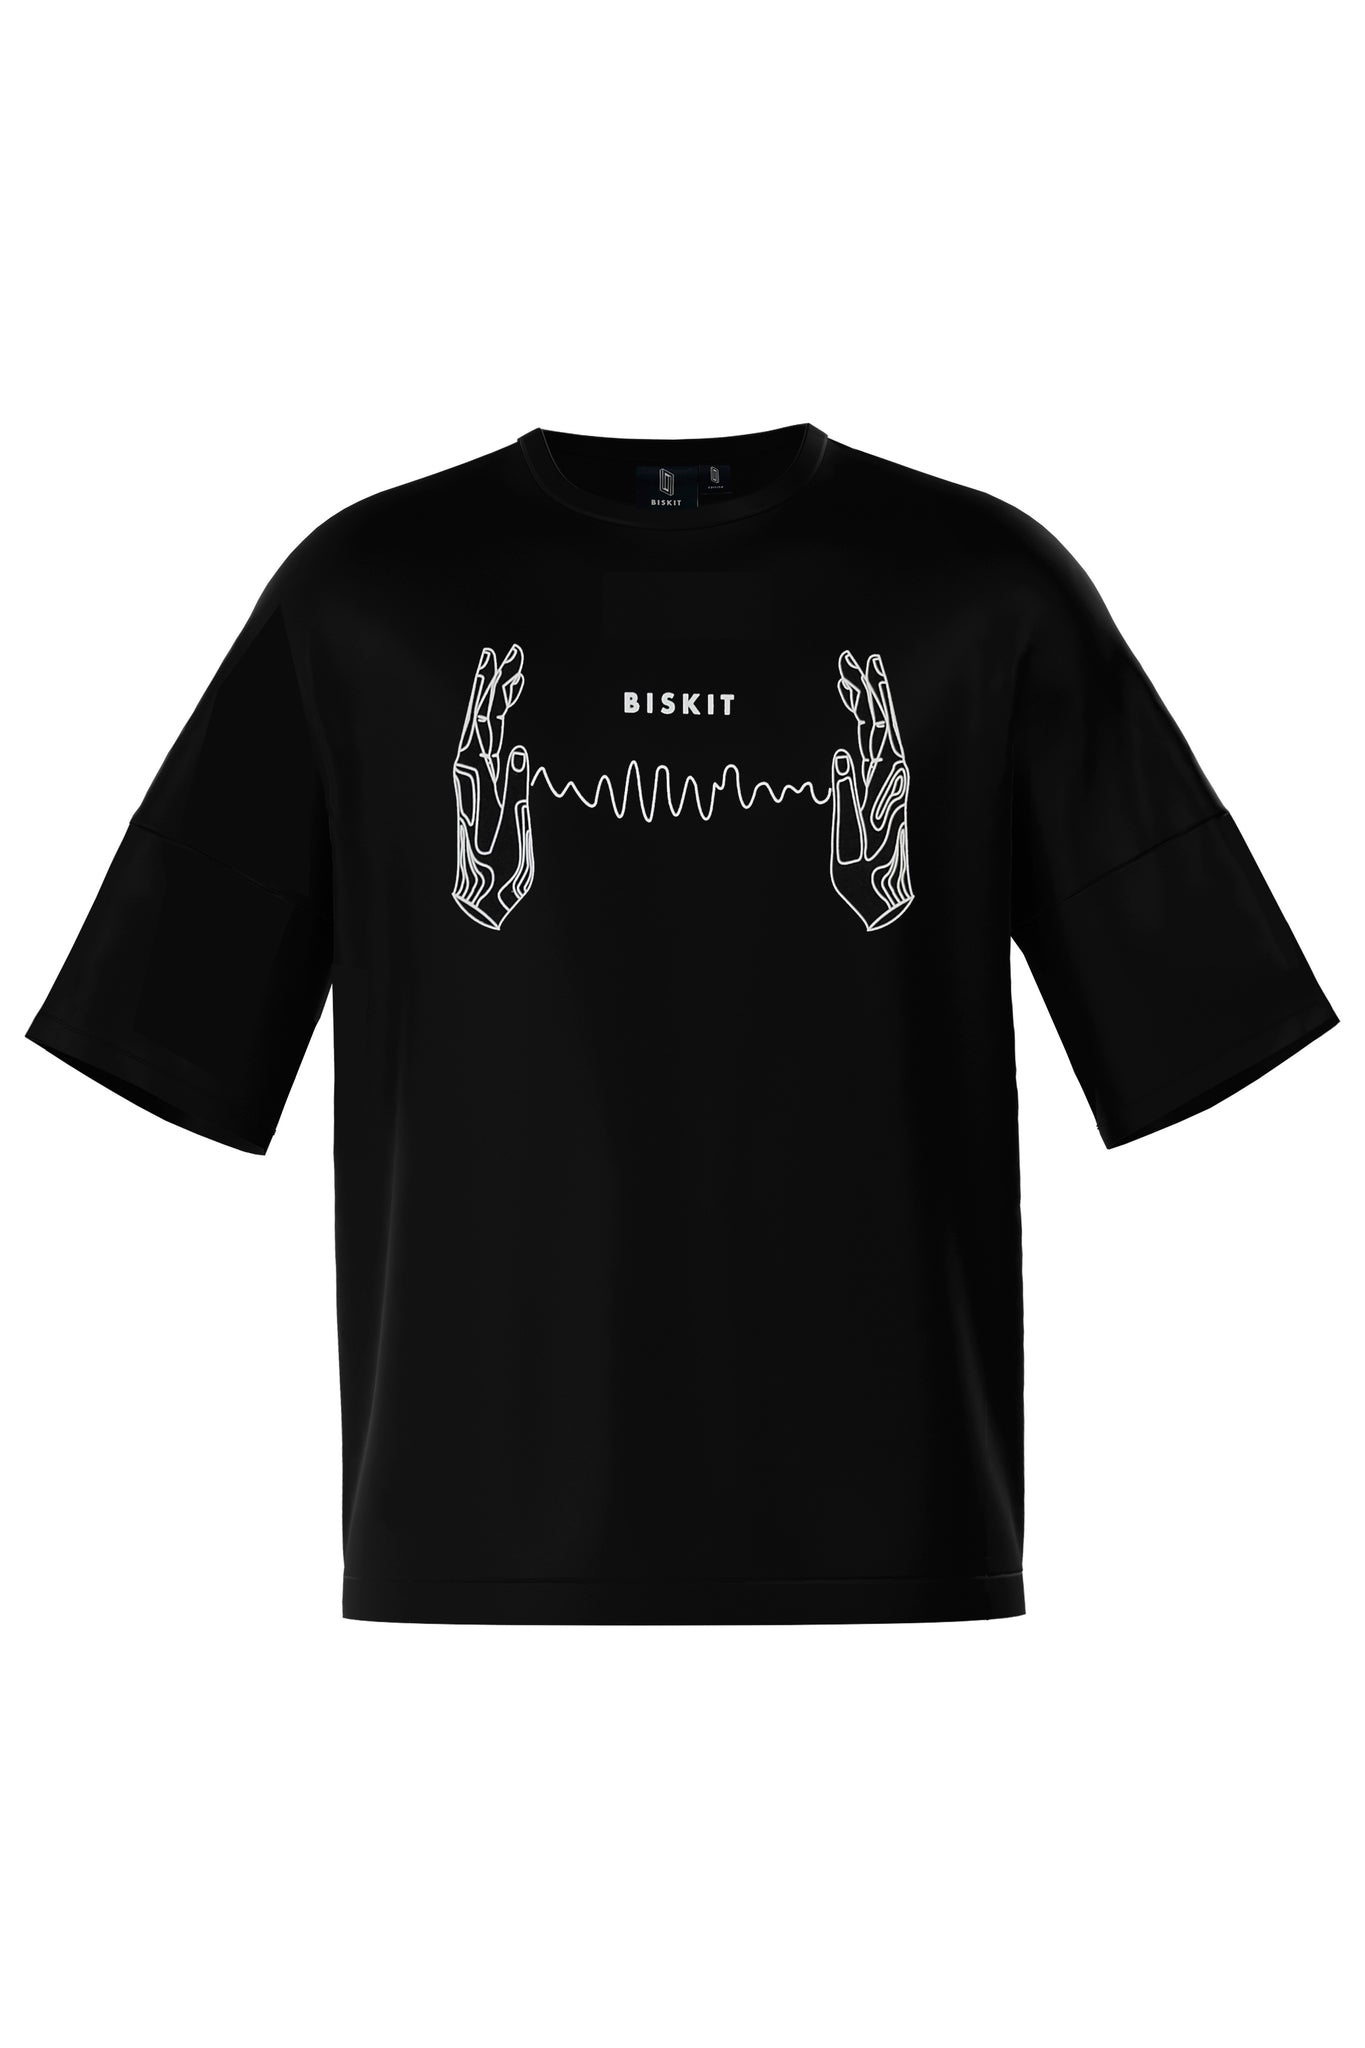 Biskit Waves T-shirt